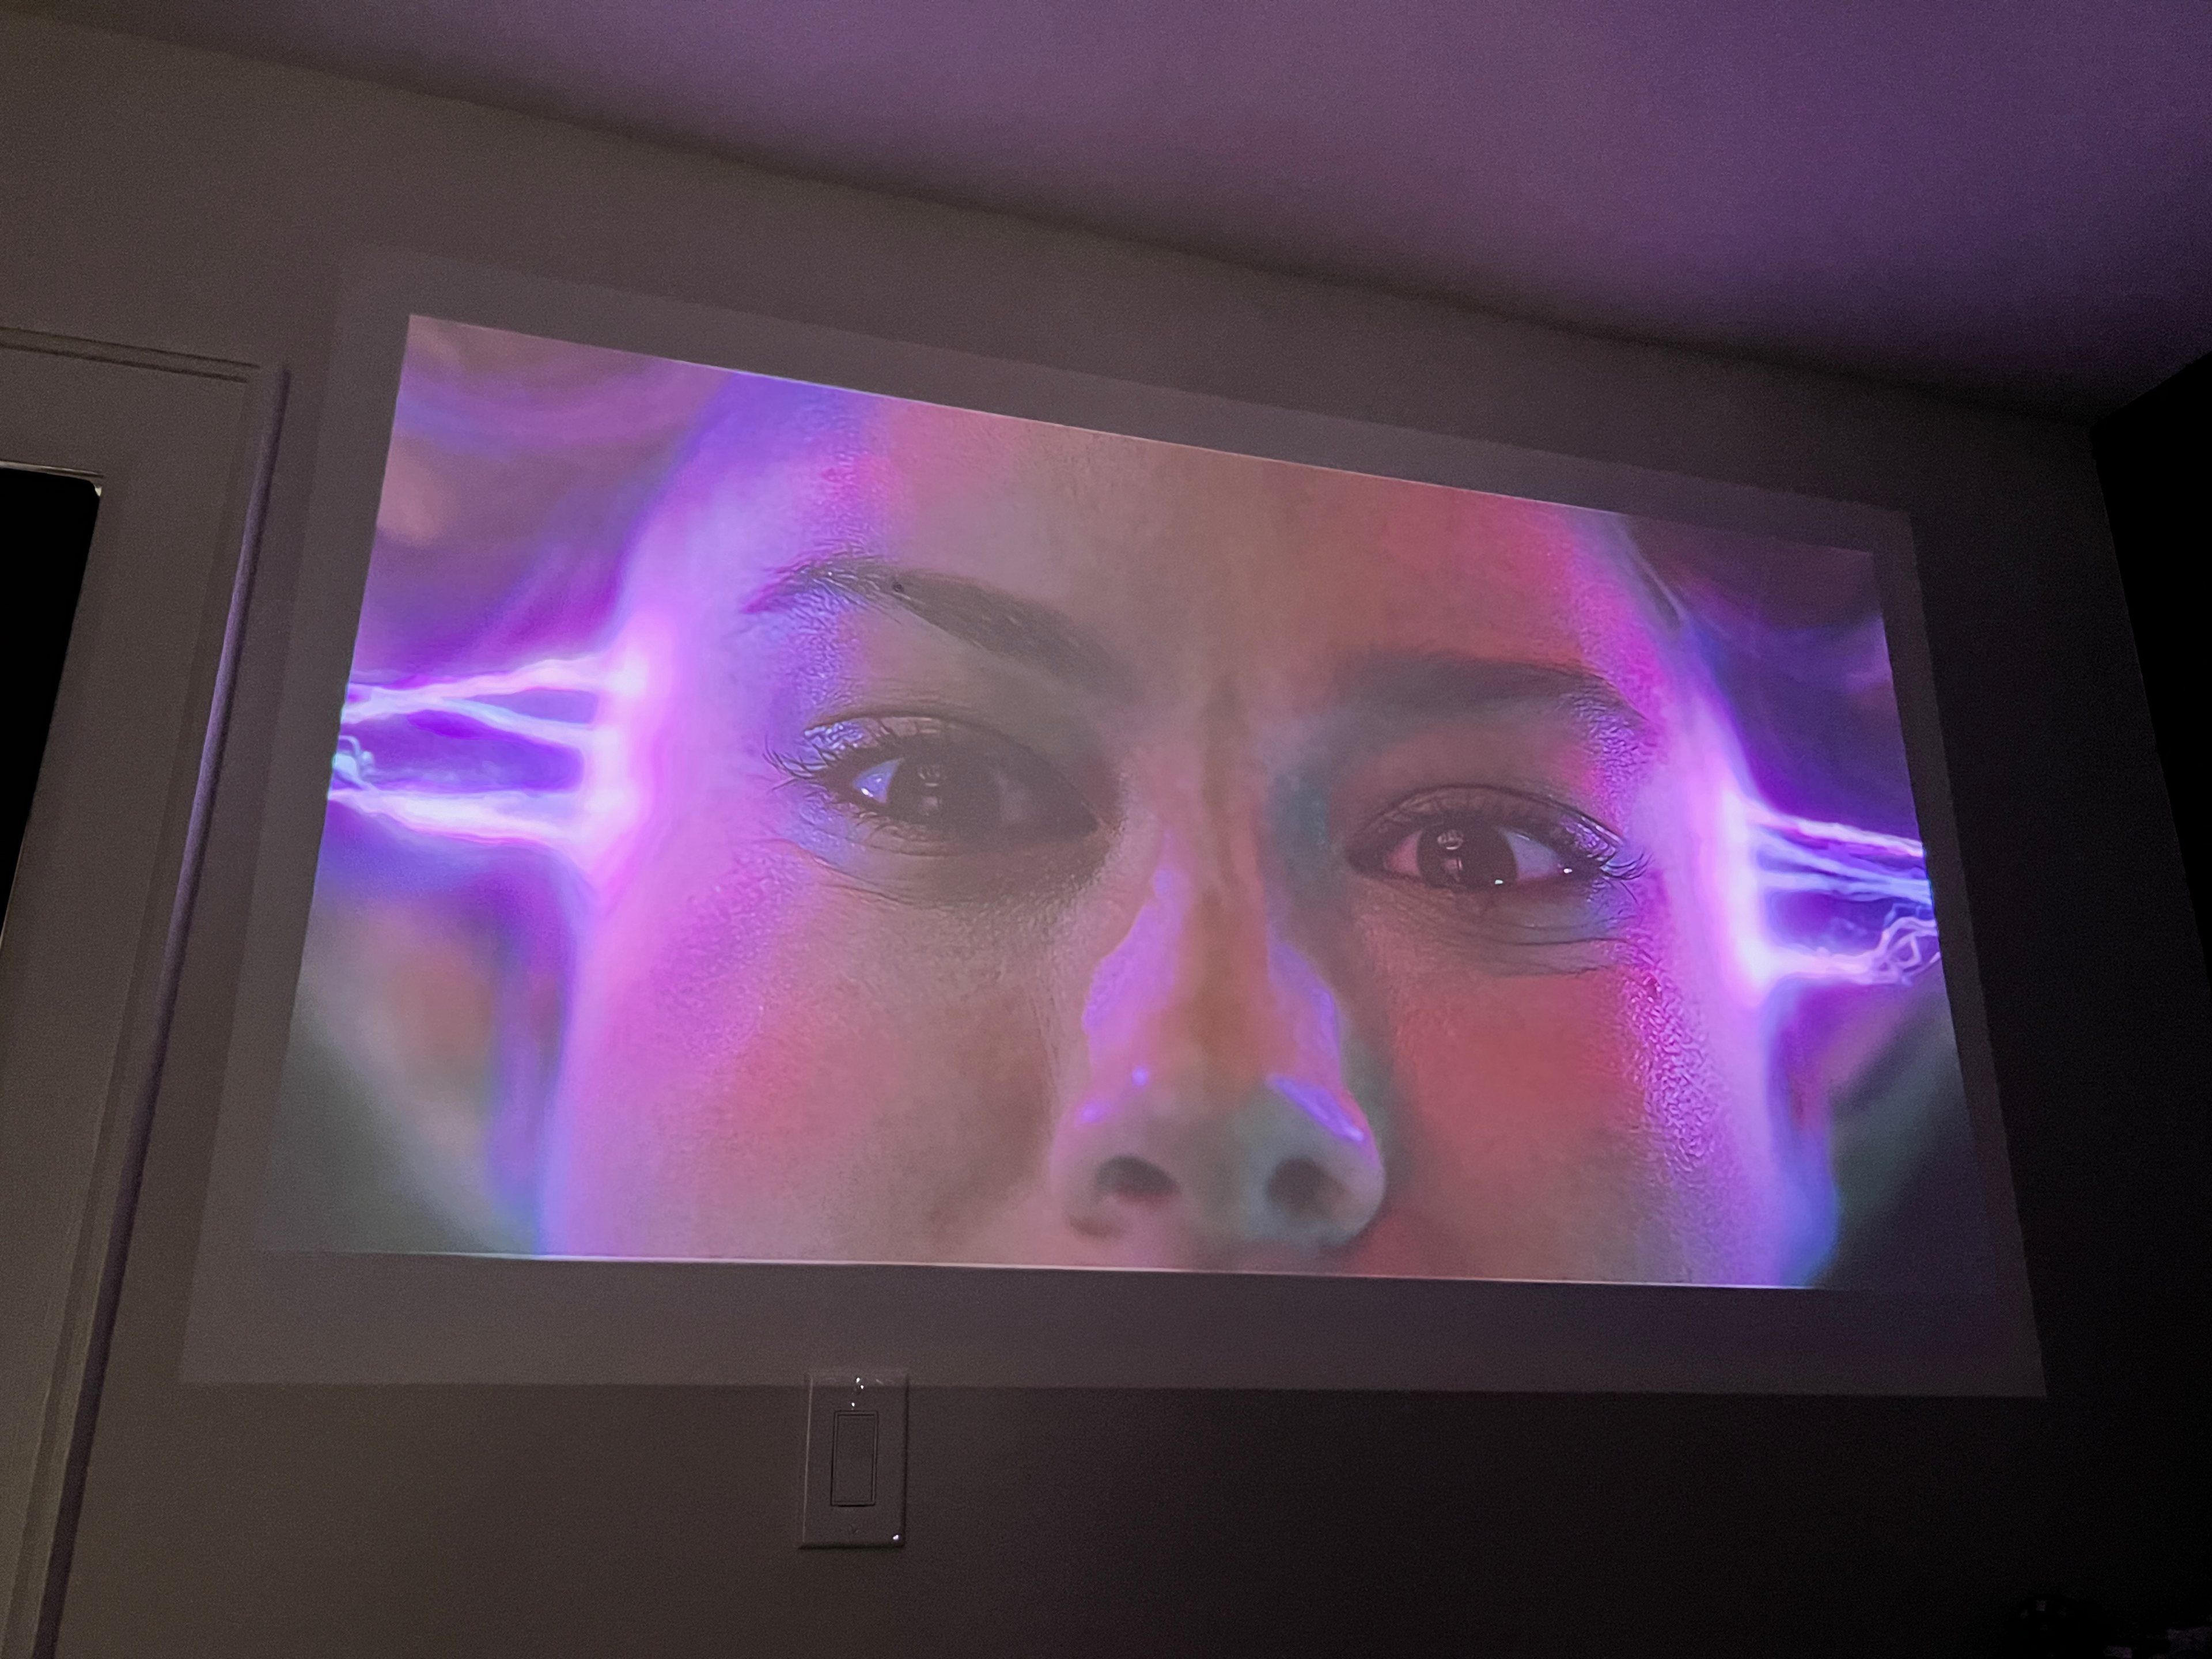 A imagem do Xgimi Mo-Go 2 Pro com a Capitã Marvel em uma sala com alguma luz ambiente.